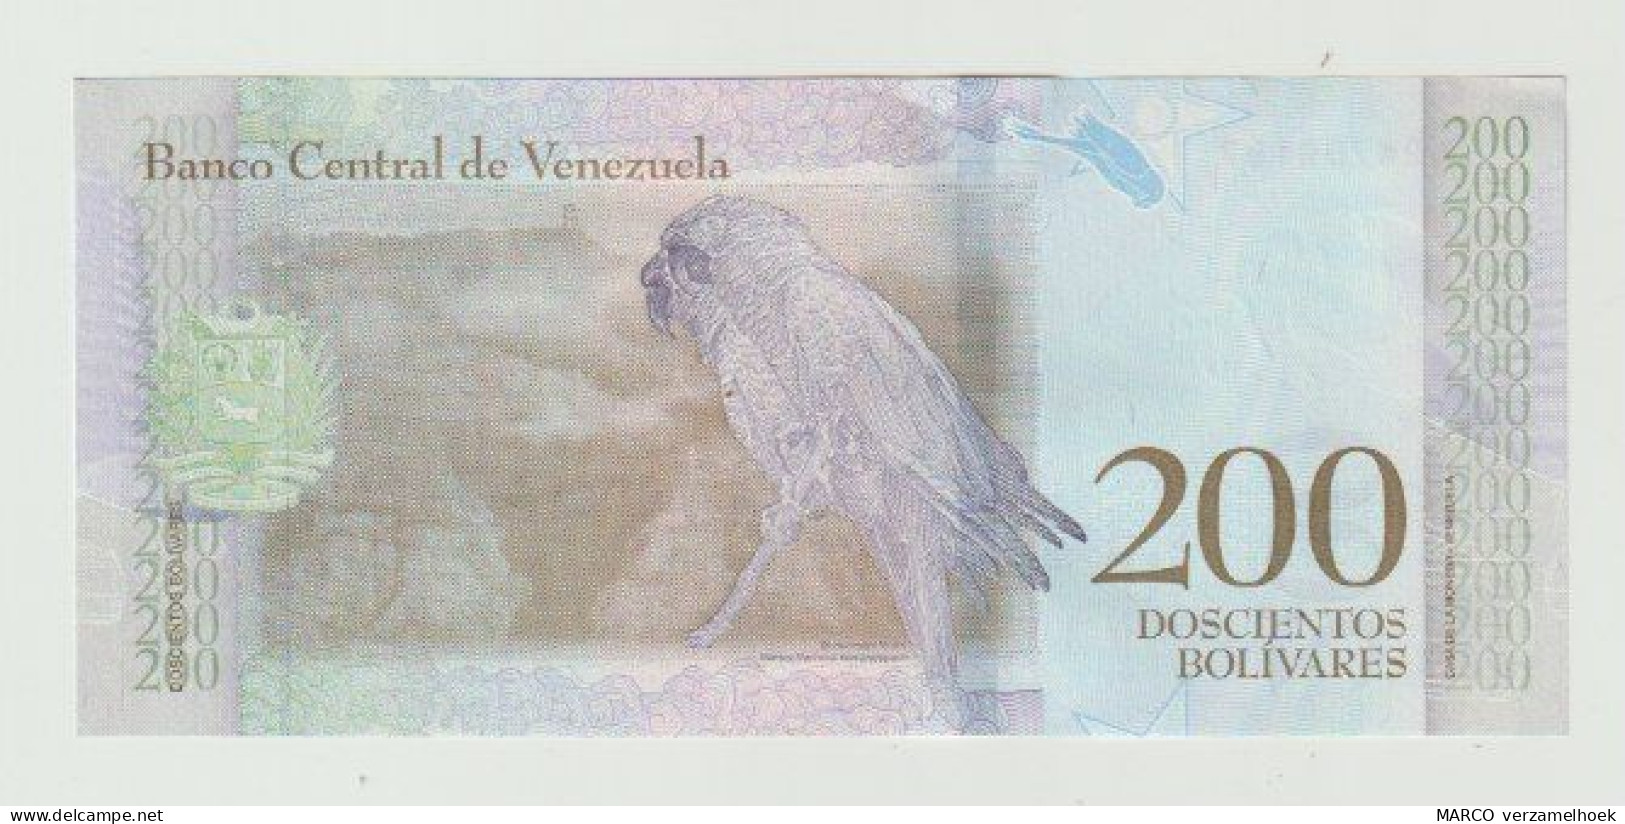 Banknote Banco Central De Venezuela 200 Bolivares 2018 UNC - Venezuela